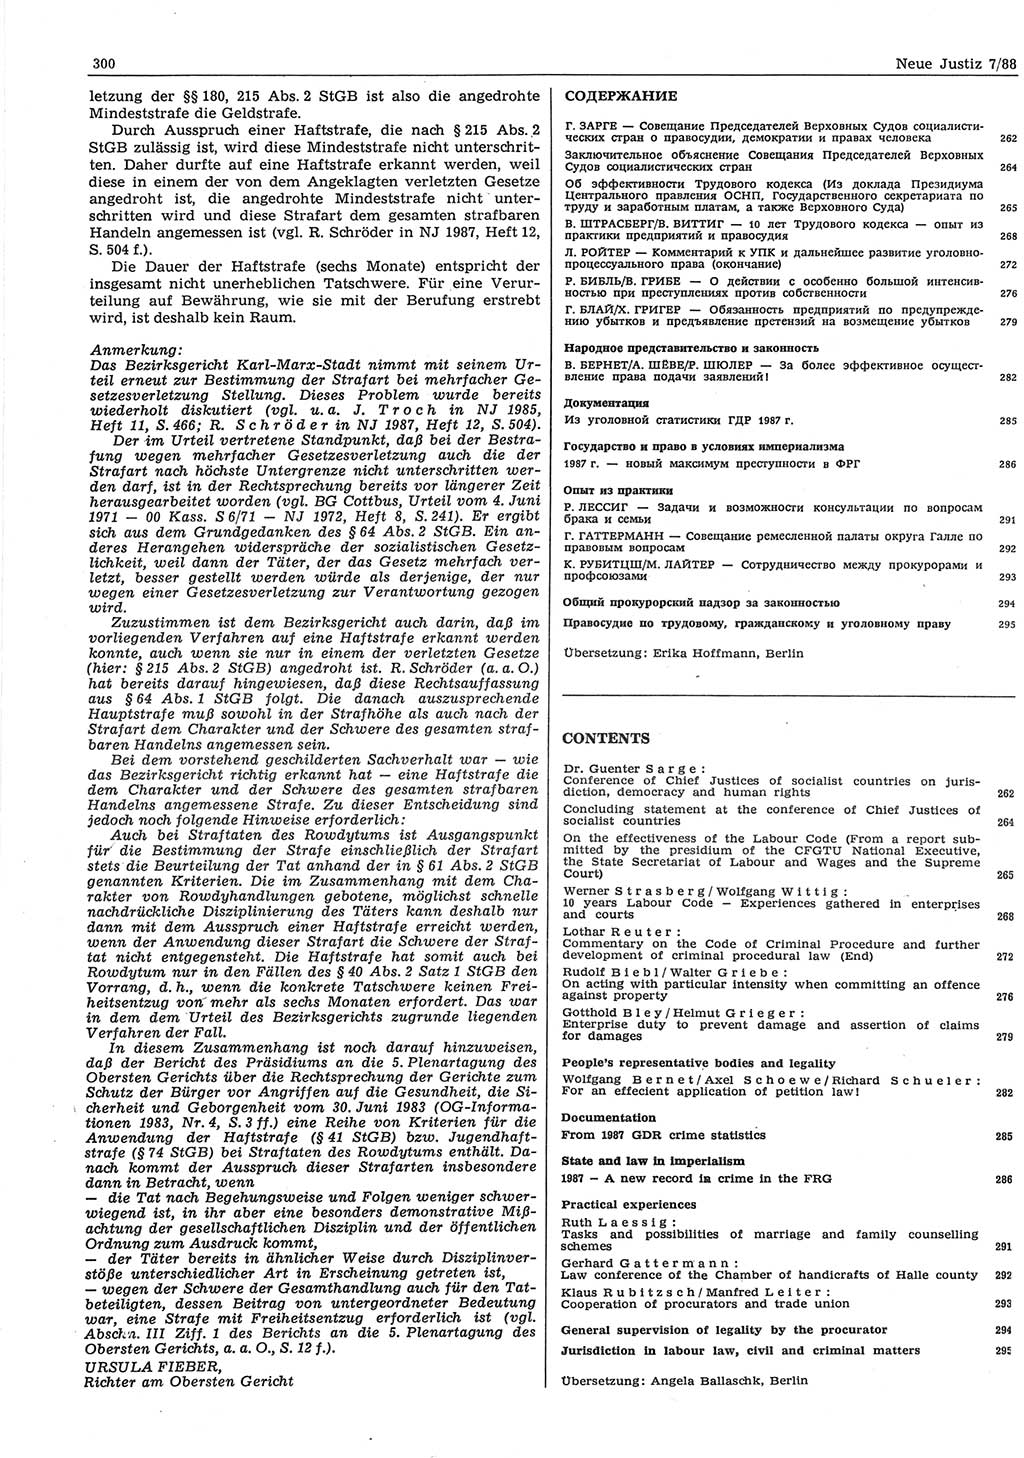 Neue Justiz (NJ), Zeitschrift für sozialistisches Recht und Gesetzlichkeit [Deutsche Demokratische Republik (DDR)], 42. Jahrgang 1988, Seite 300 (NJ DDR 1988, S. 300)